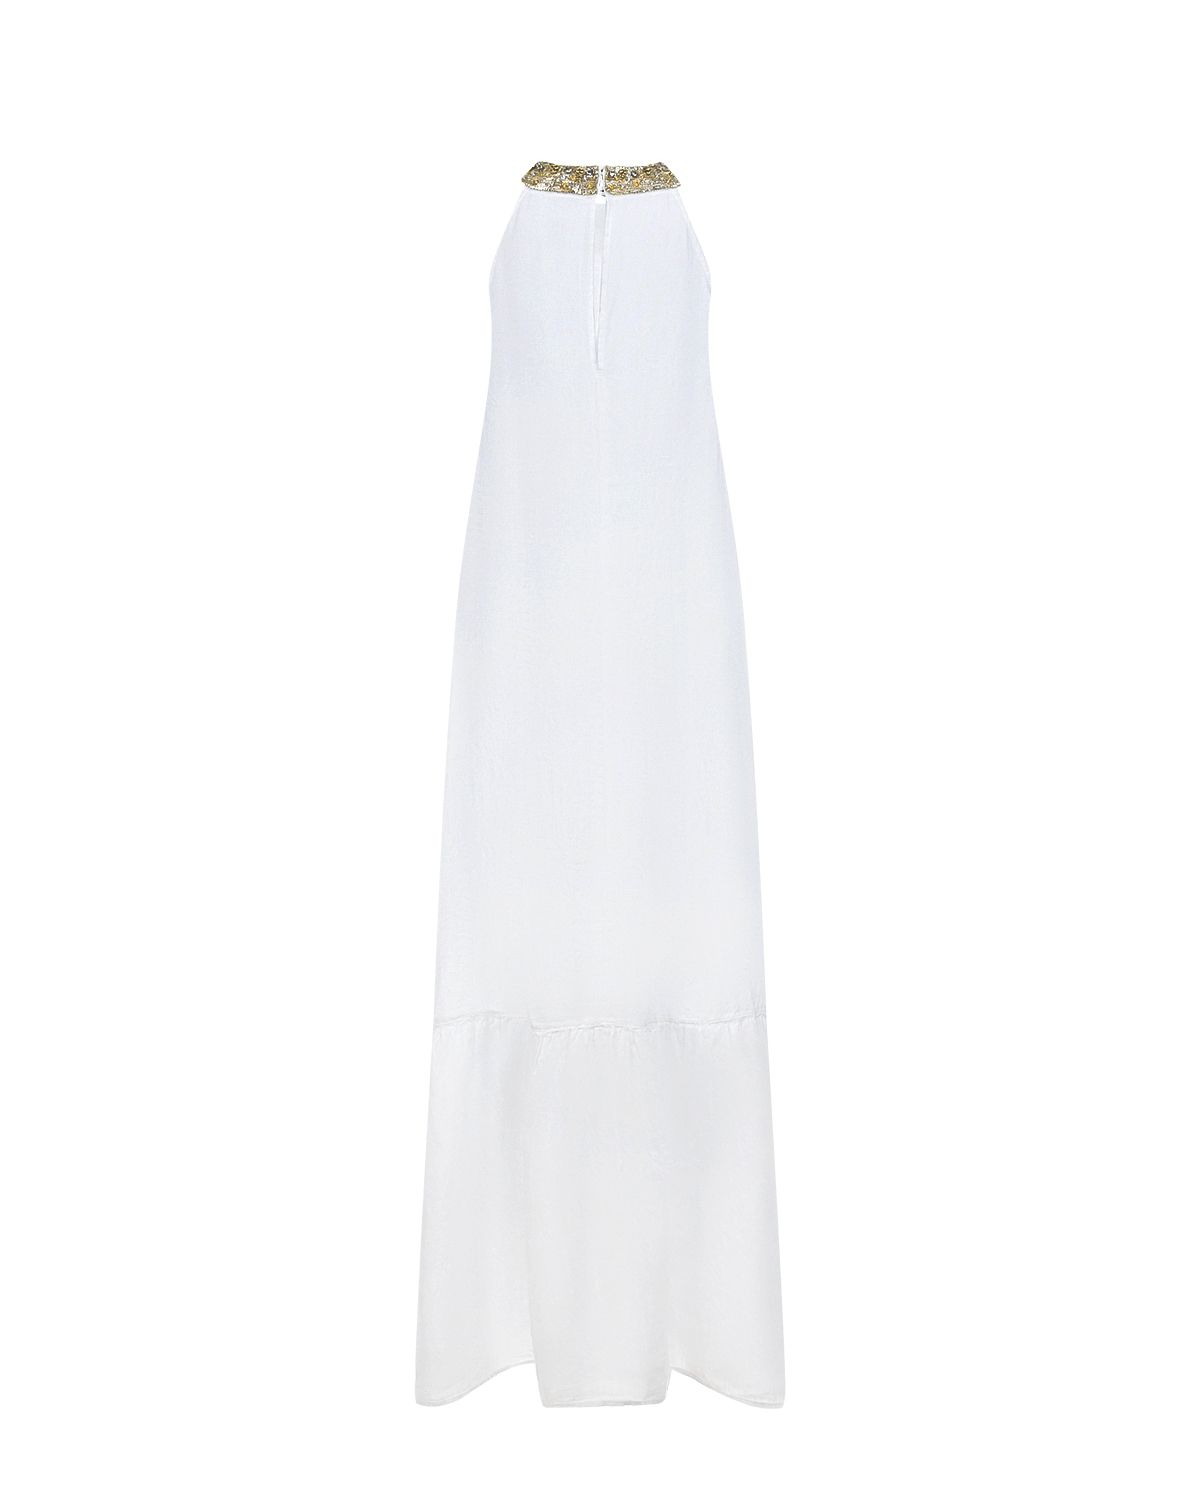 Белое платье со стразами 120% Lino, размер 42, цвет белый - фото 5